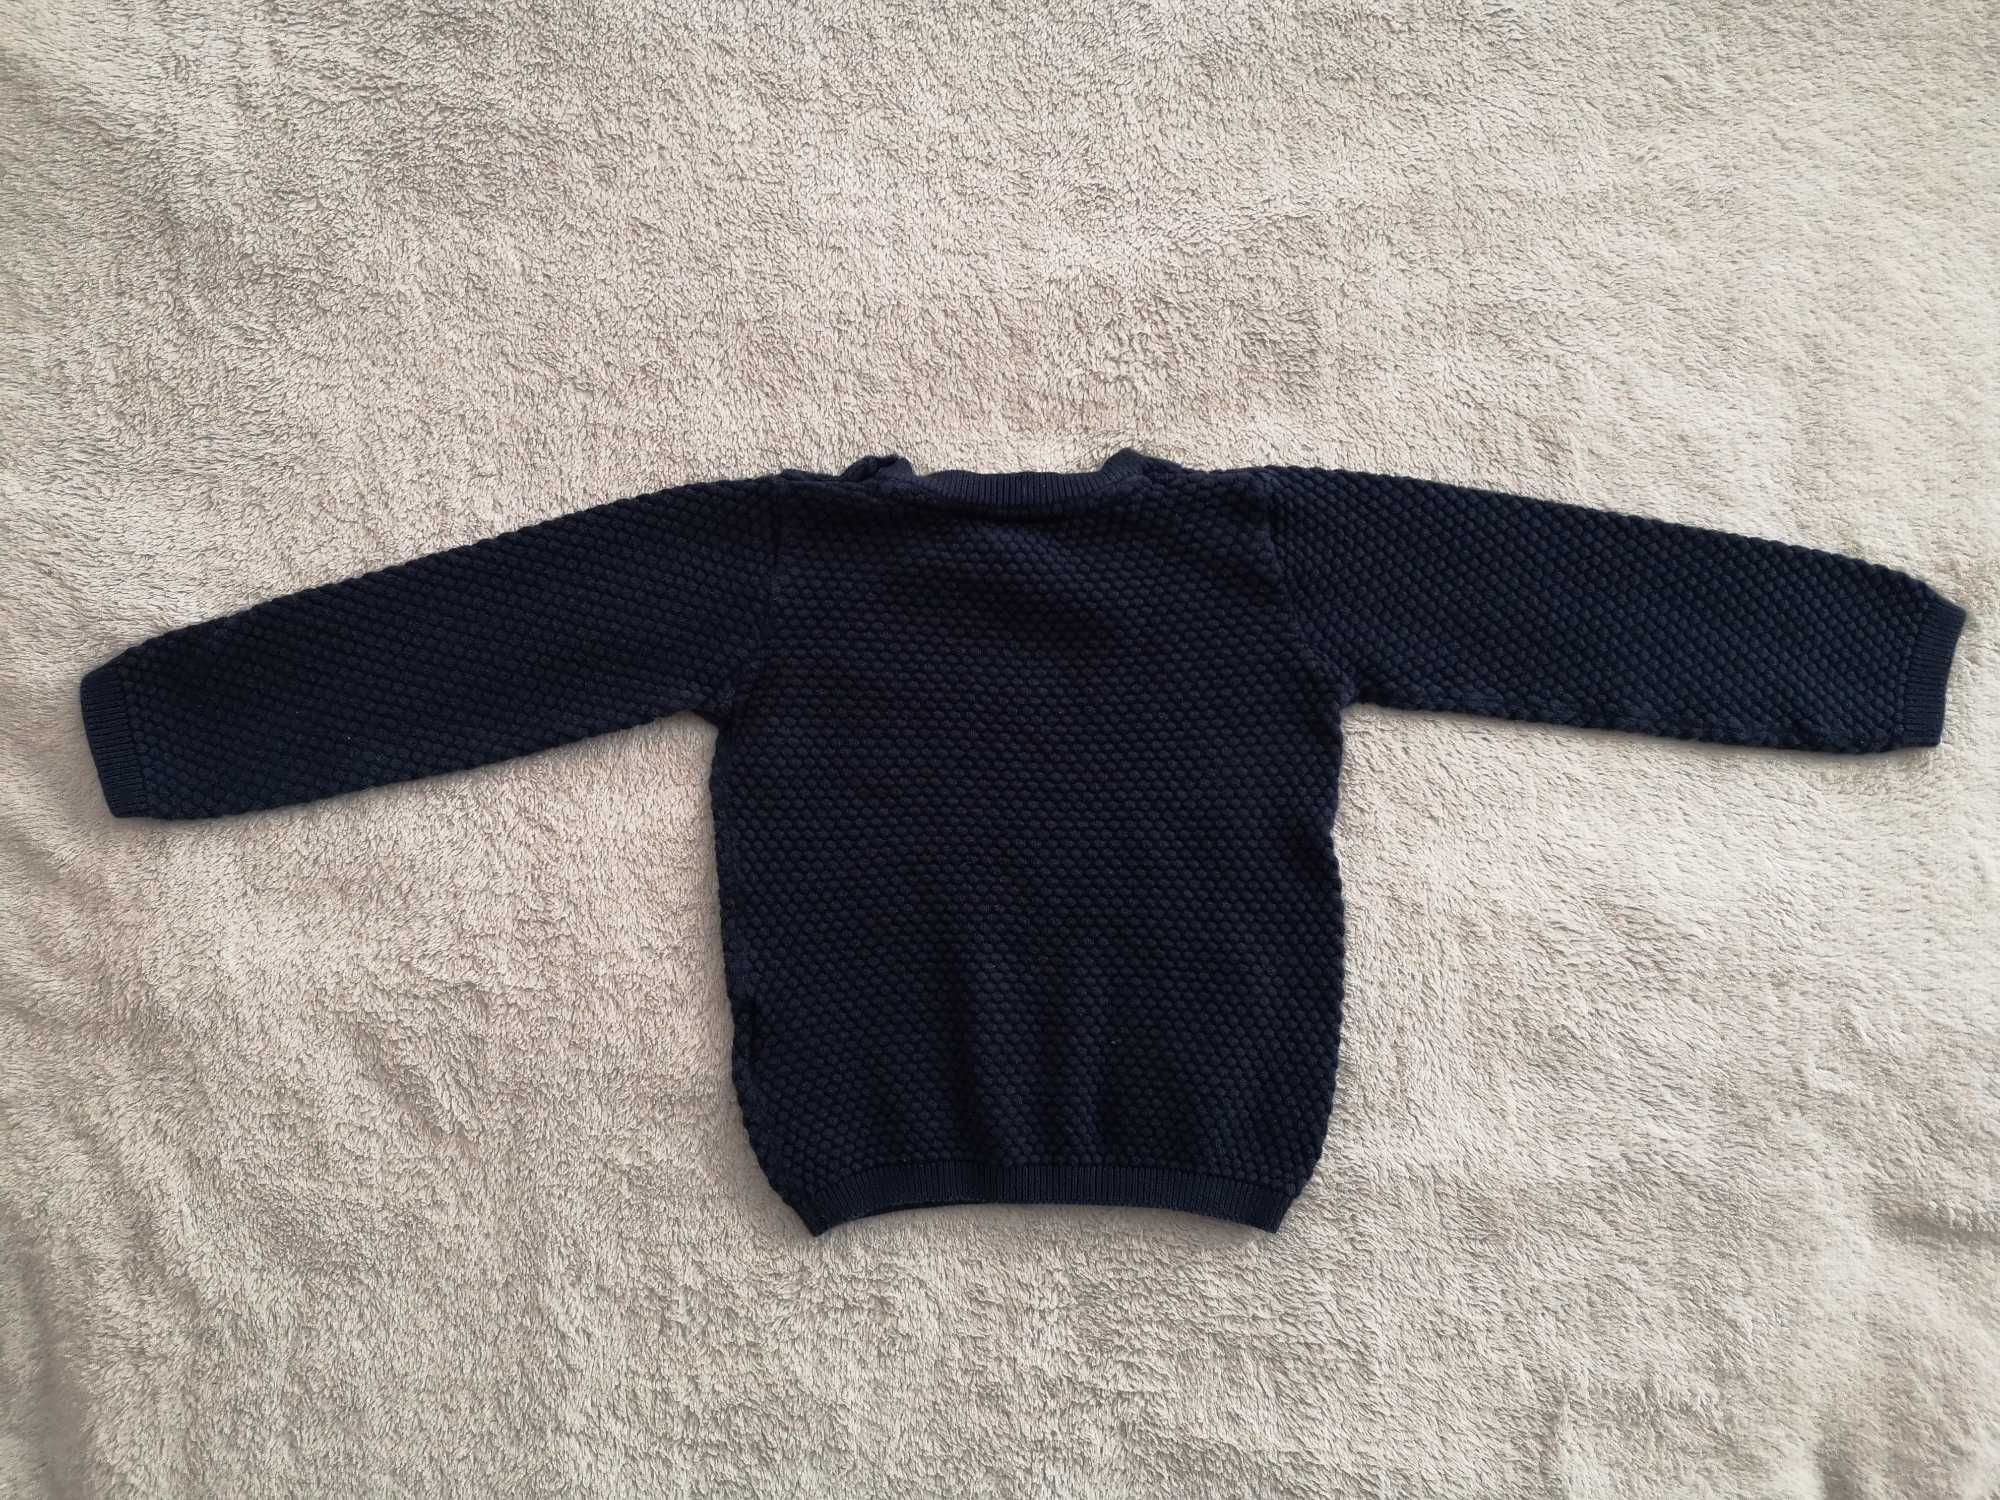 Granatowy pikowany elegancki sweter plaster miodu Lupilu 86 92 j nowy